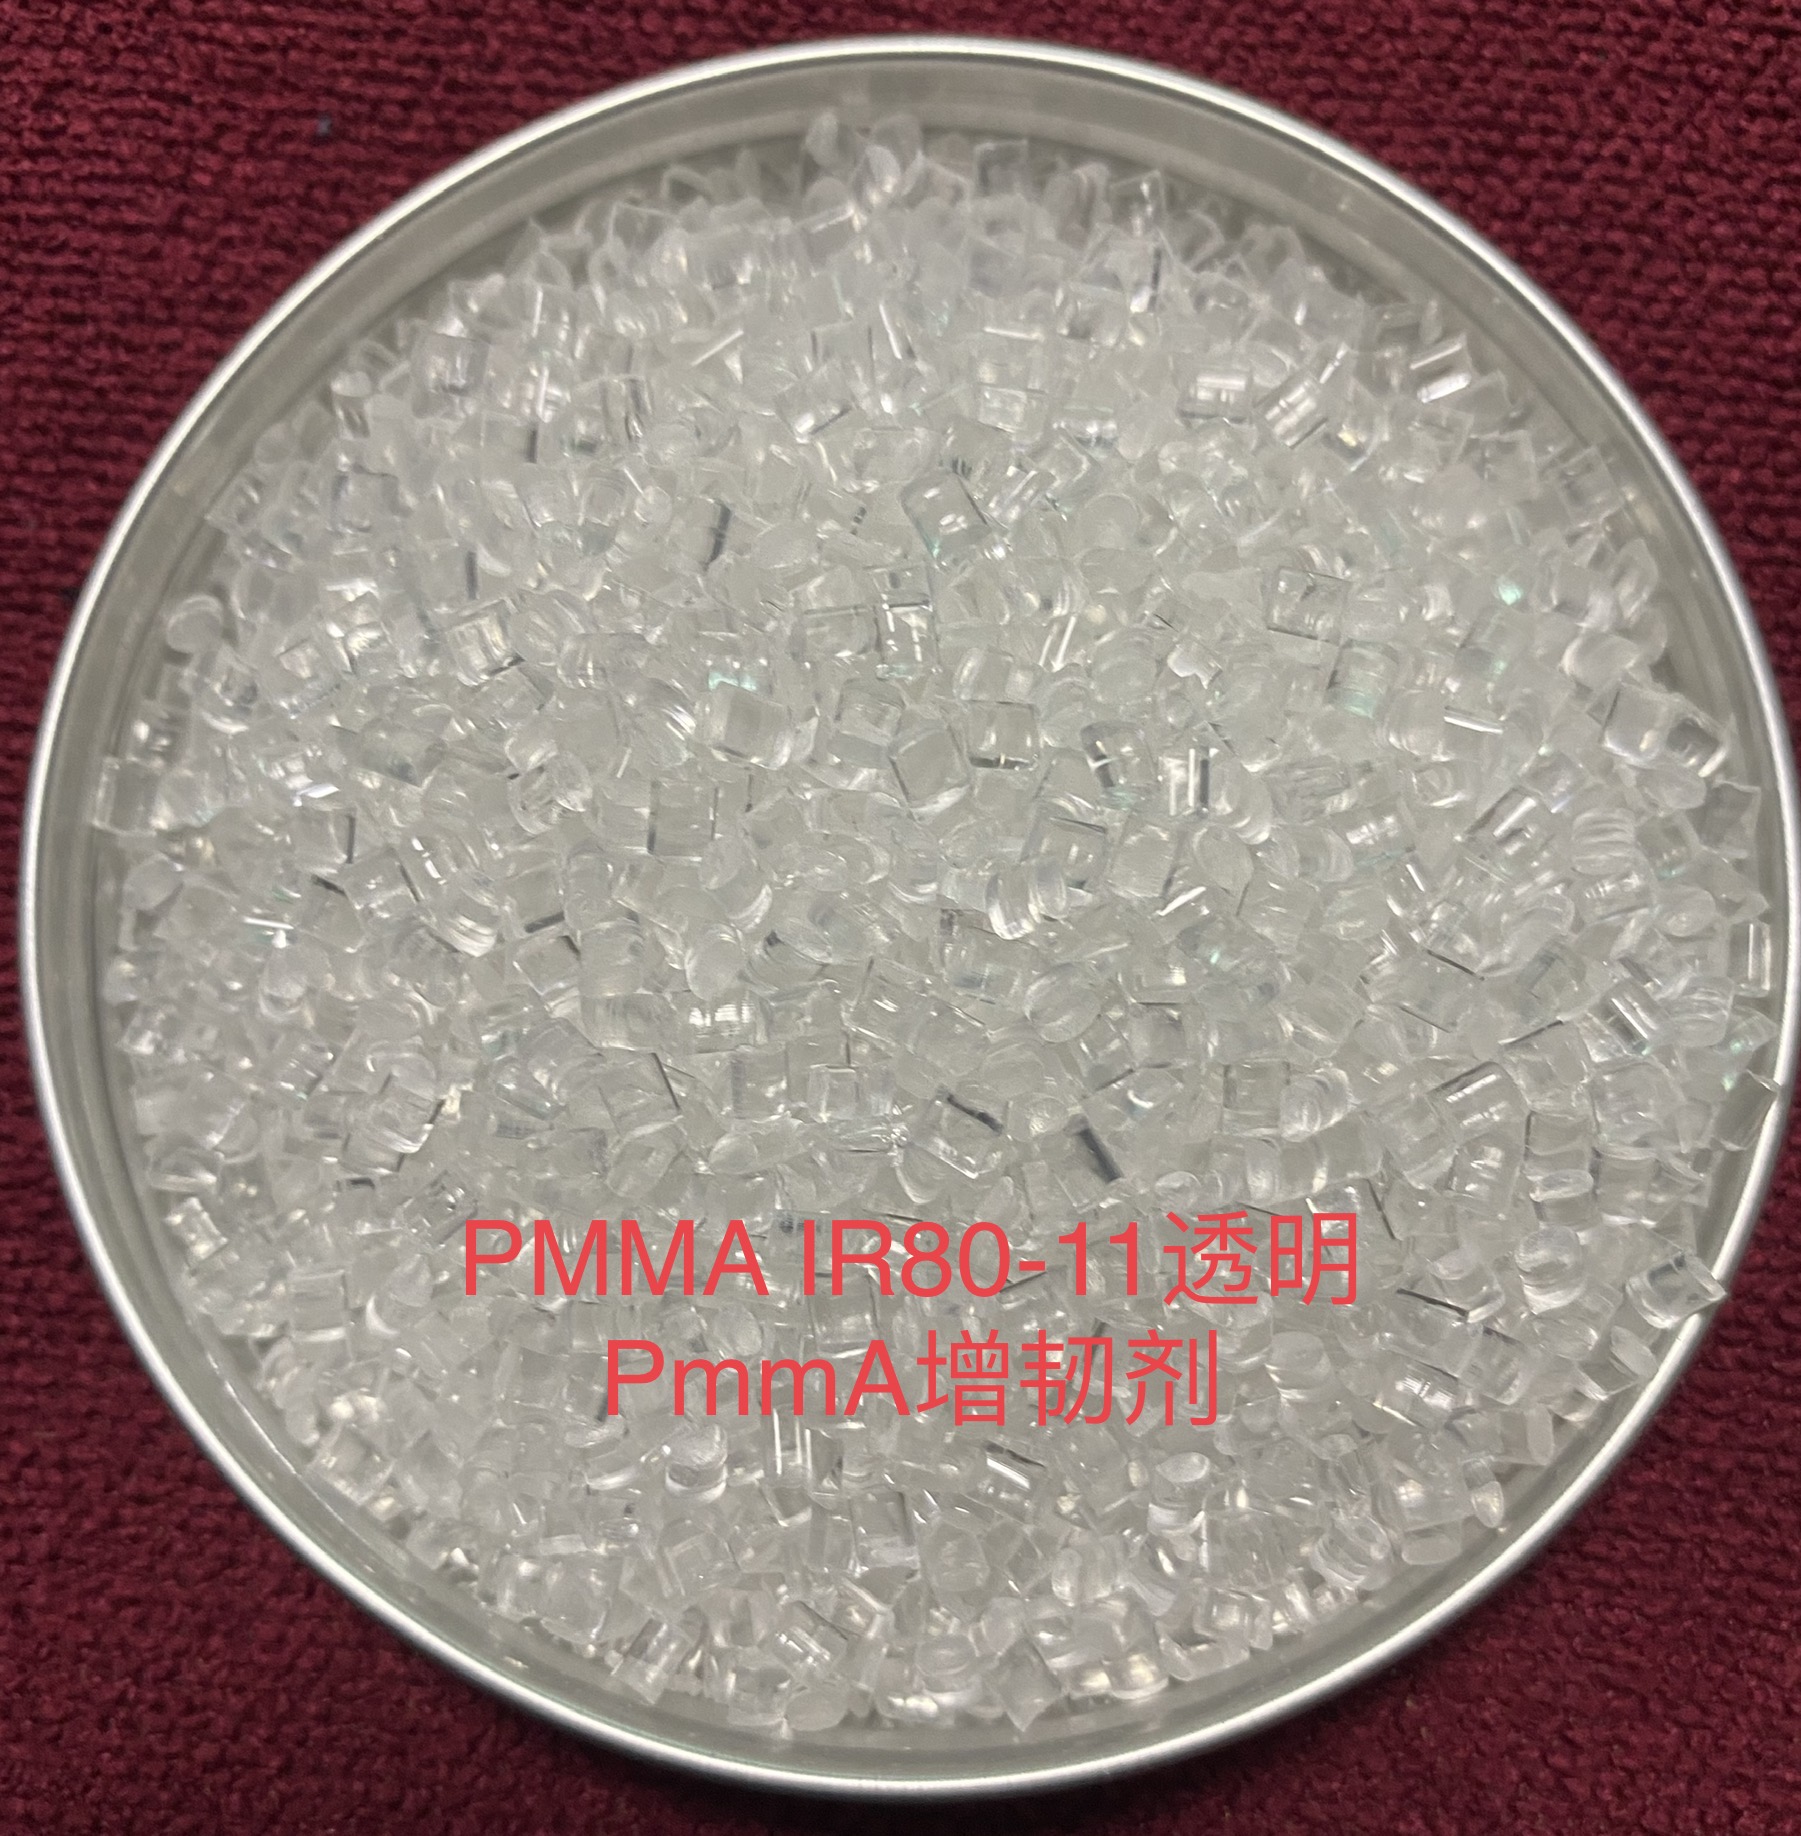 PMMA1R80-11透明